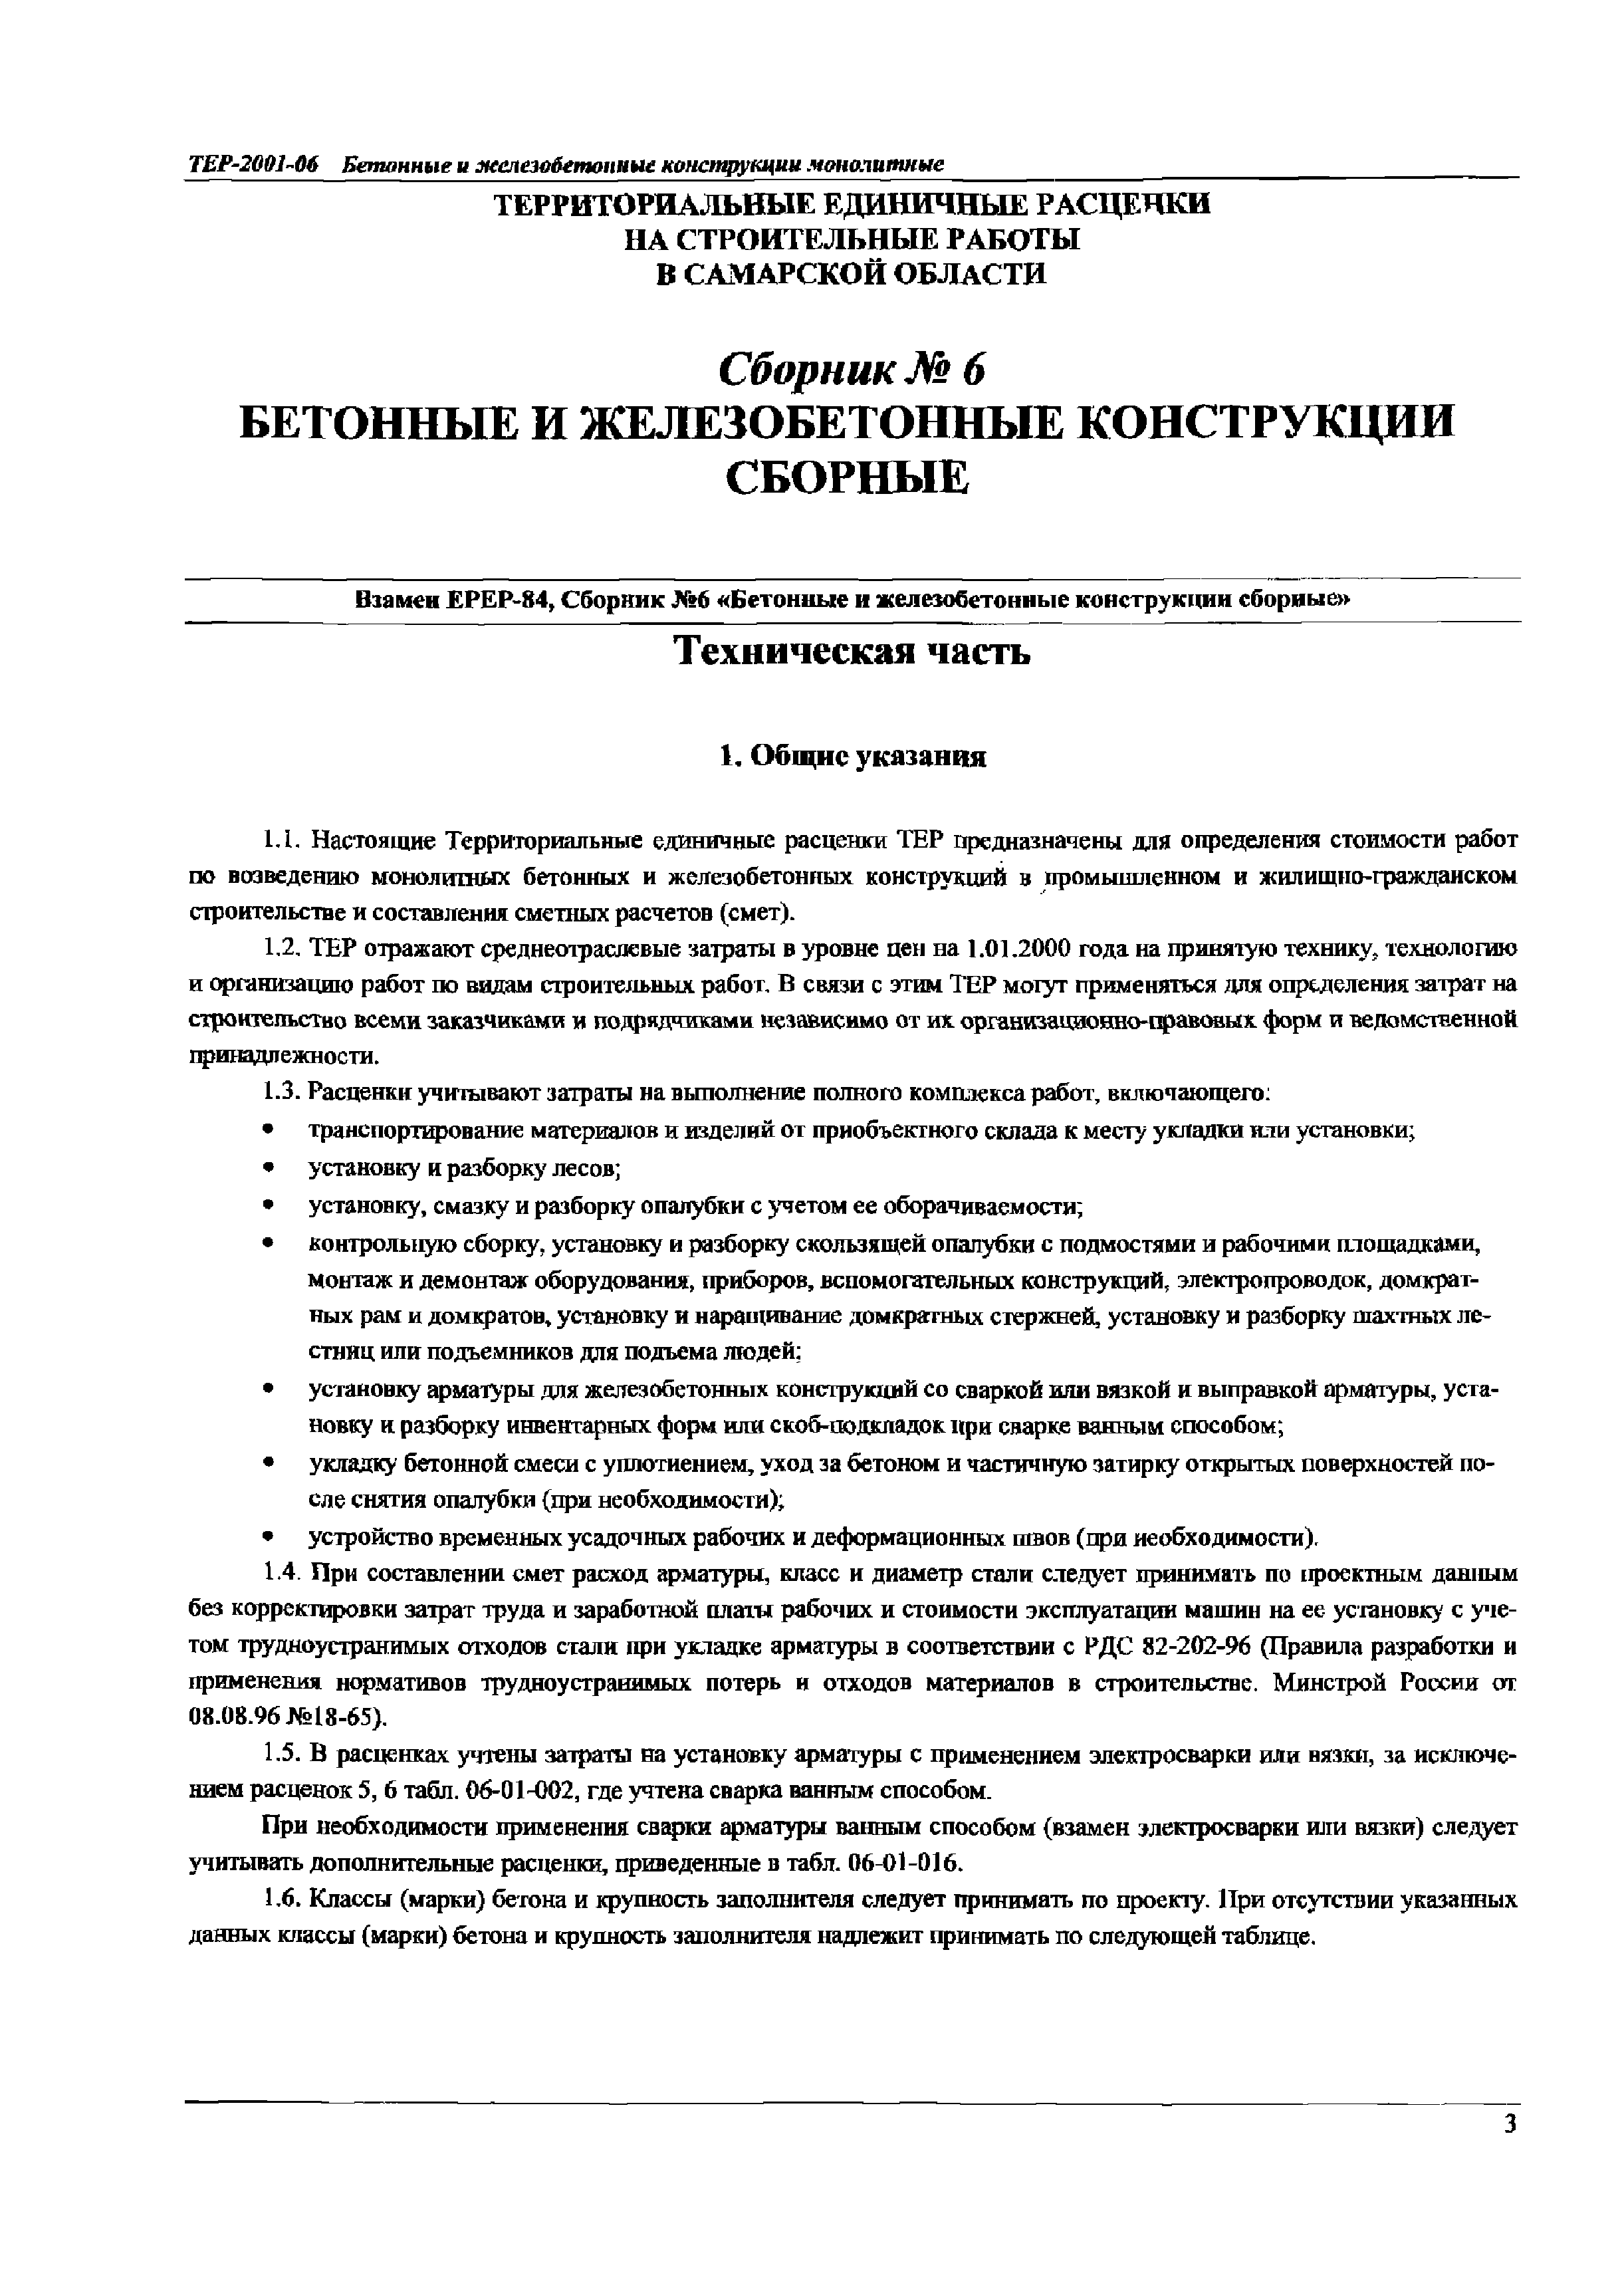 ТЕР Самарской области 2001-06